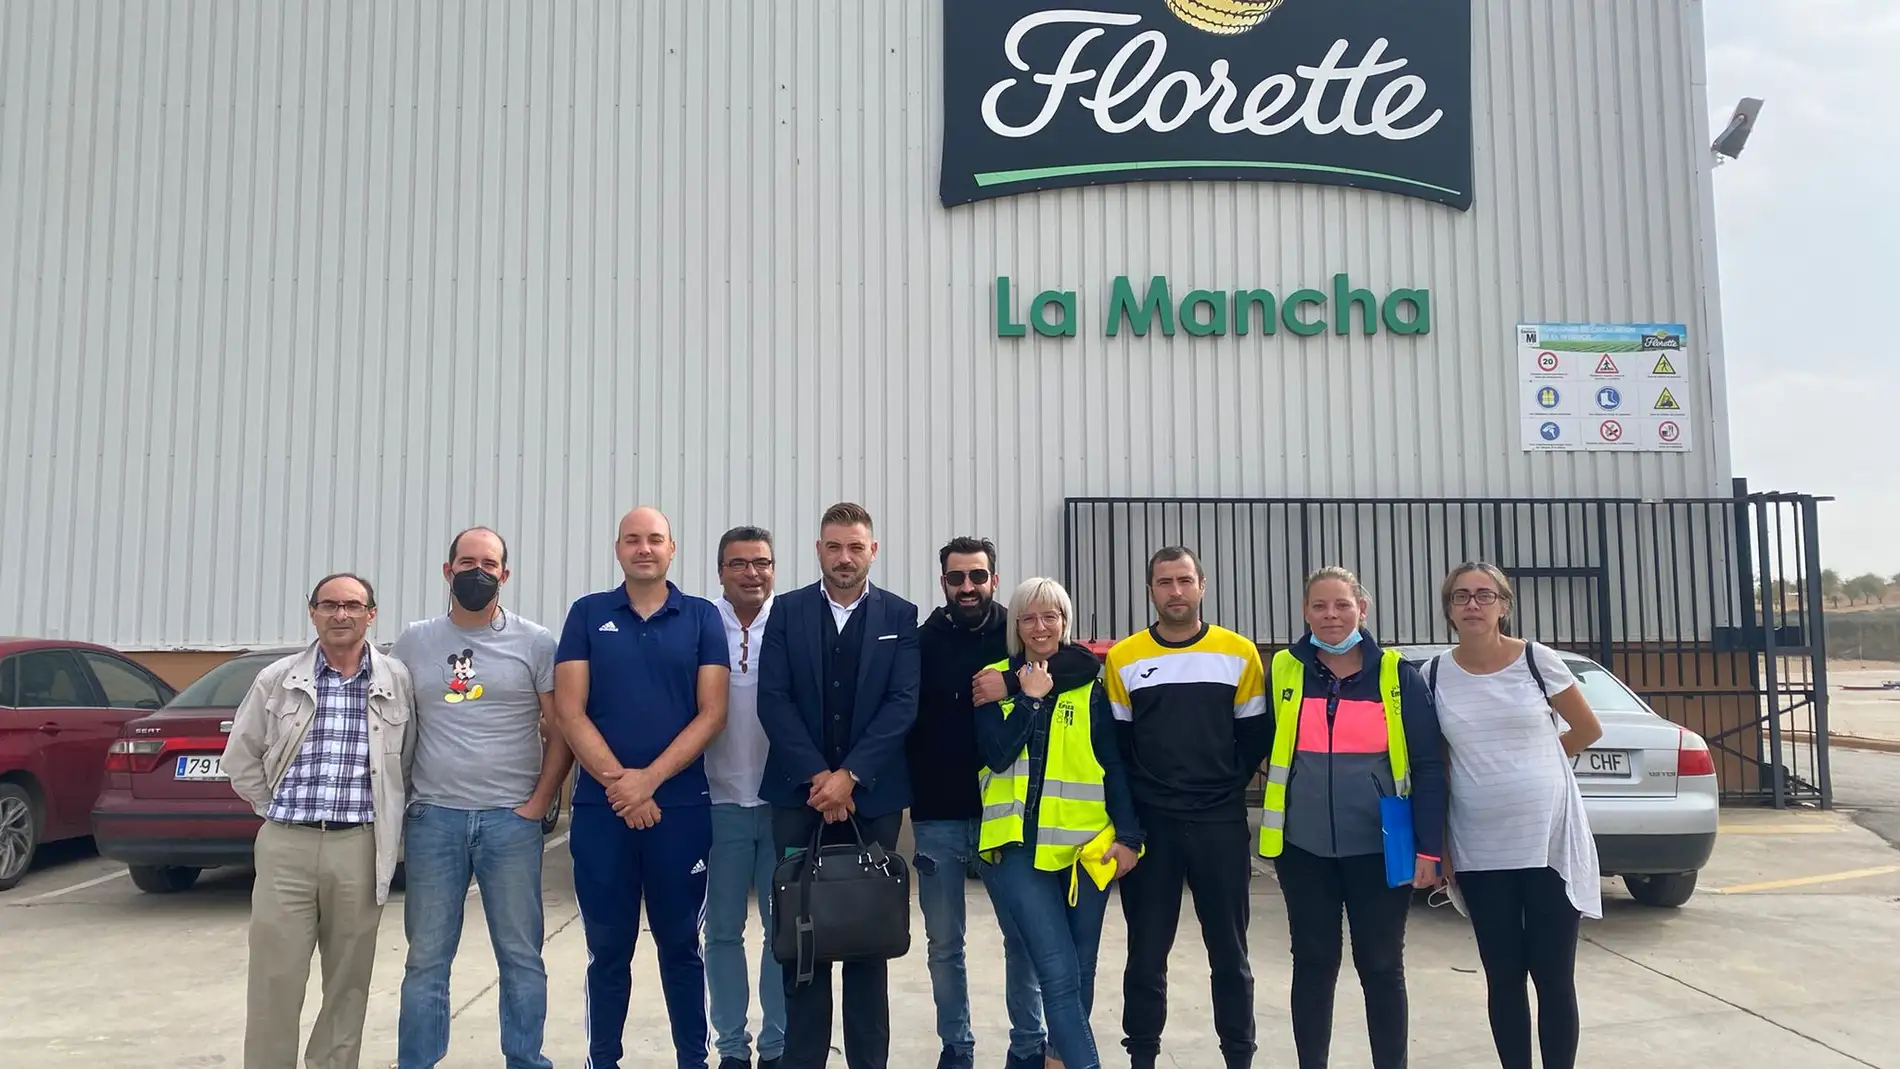 Acuerdo en Florette para el cierre de su planta de Iniesta antes de que termine octubre